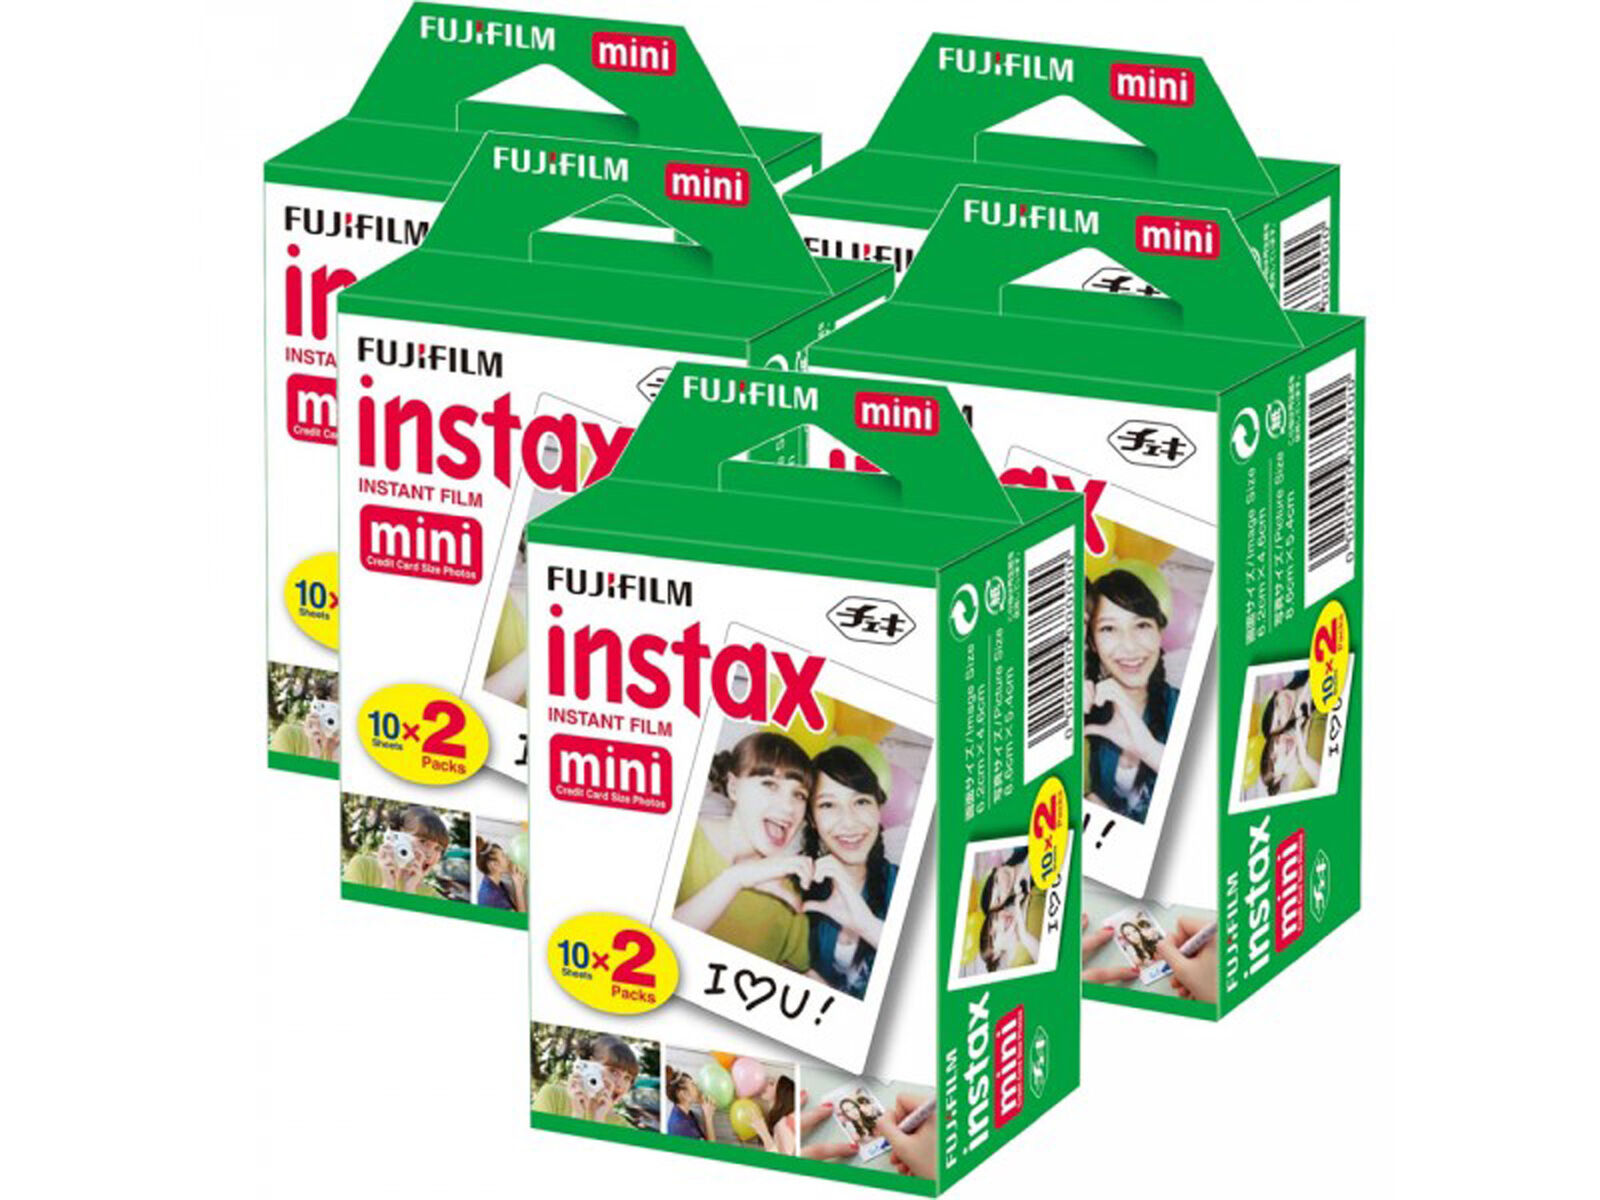 20-40-50-60 & 100 Prints Fujifilm instax instant film For Fuji mini 8 & 9 Camera Fujifilm Instax Mini